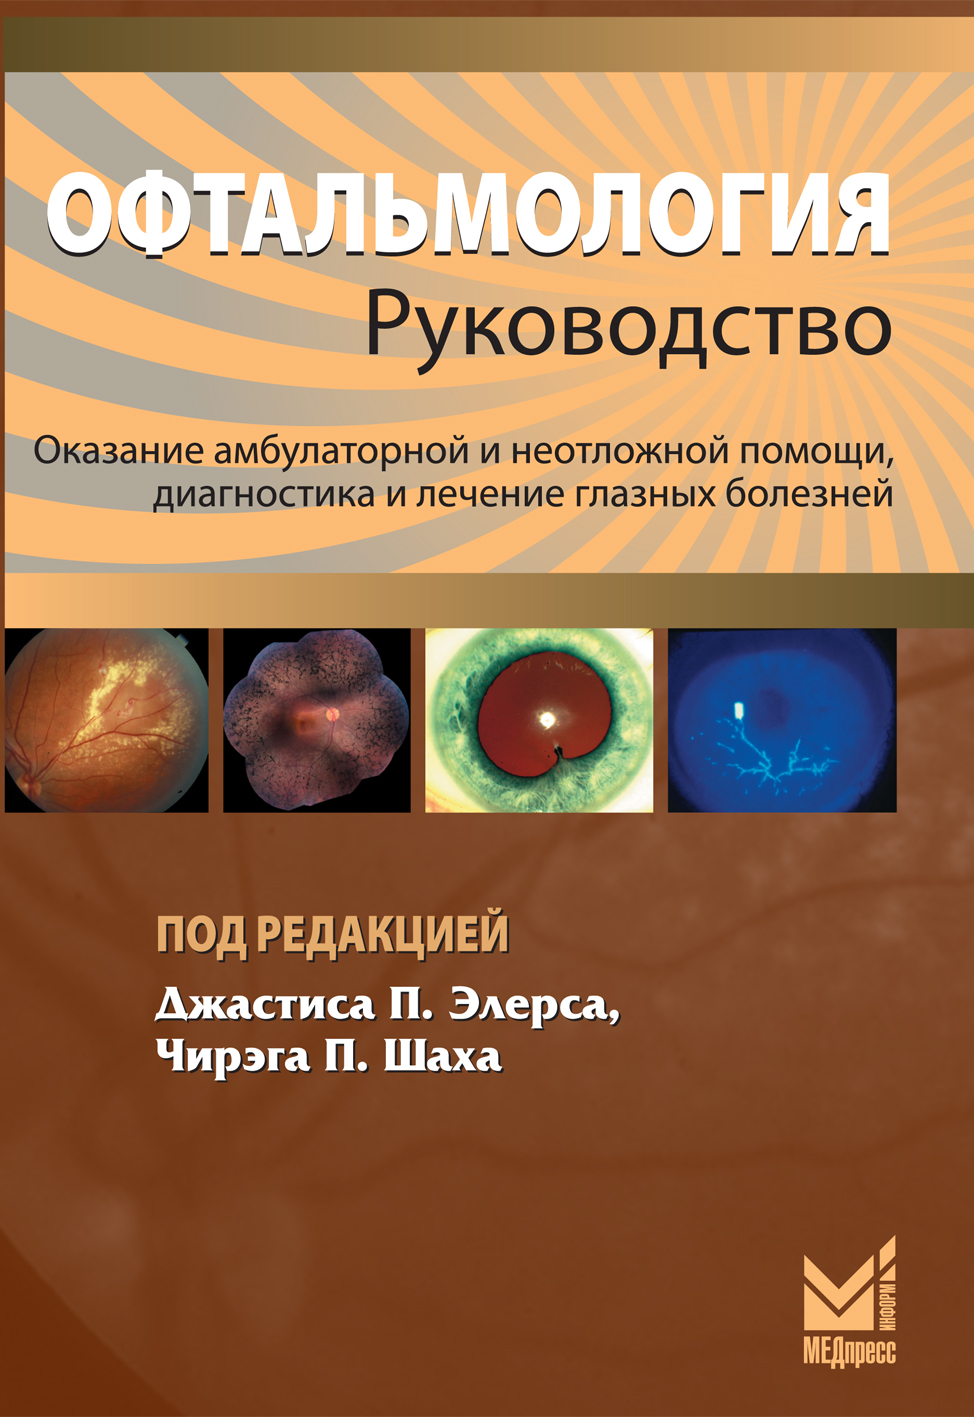 Книги по офтальмологии скачать бесплатно без регистрации